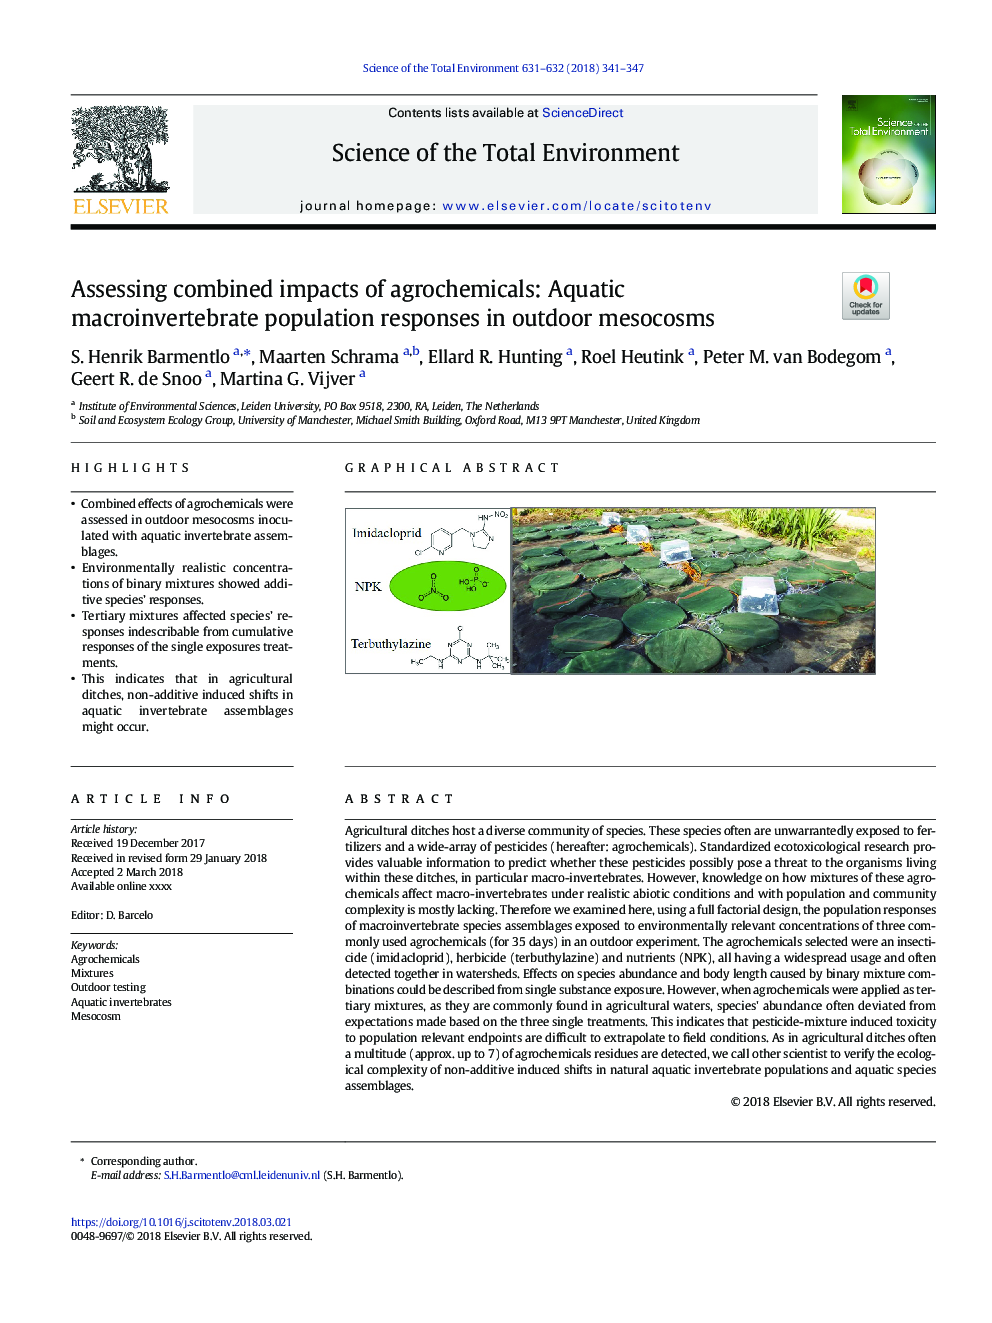 ارزیابی اثرات ترکیبی محصولات زراعی: پاسخ های جمعیت کلان کلم درختان در مزوکوسم های فصلی 